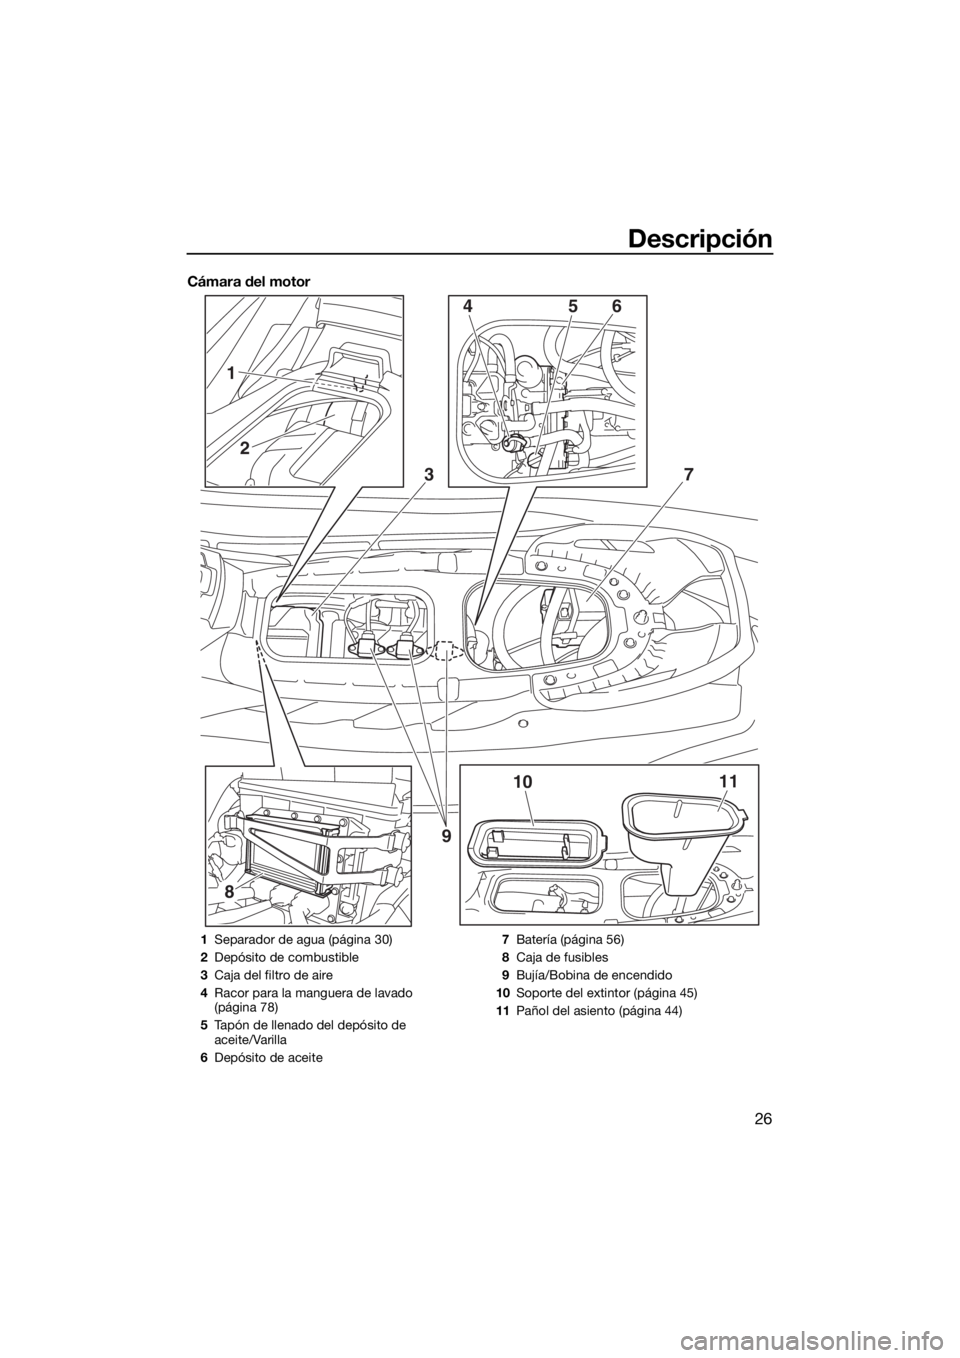 YAMAHA EX 2018  Manuale de Empleo (in Spanish) Descripción
26
Cámara del motor
8
3
1011 4
2
156
7
9
1Separador de agua (página 30)
2Depósito de combustible
3Caja del filtro de aire
4Racor para la manguera de lavado 
(página 78)
5Tapón de lle